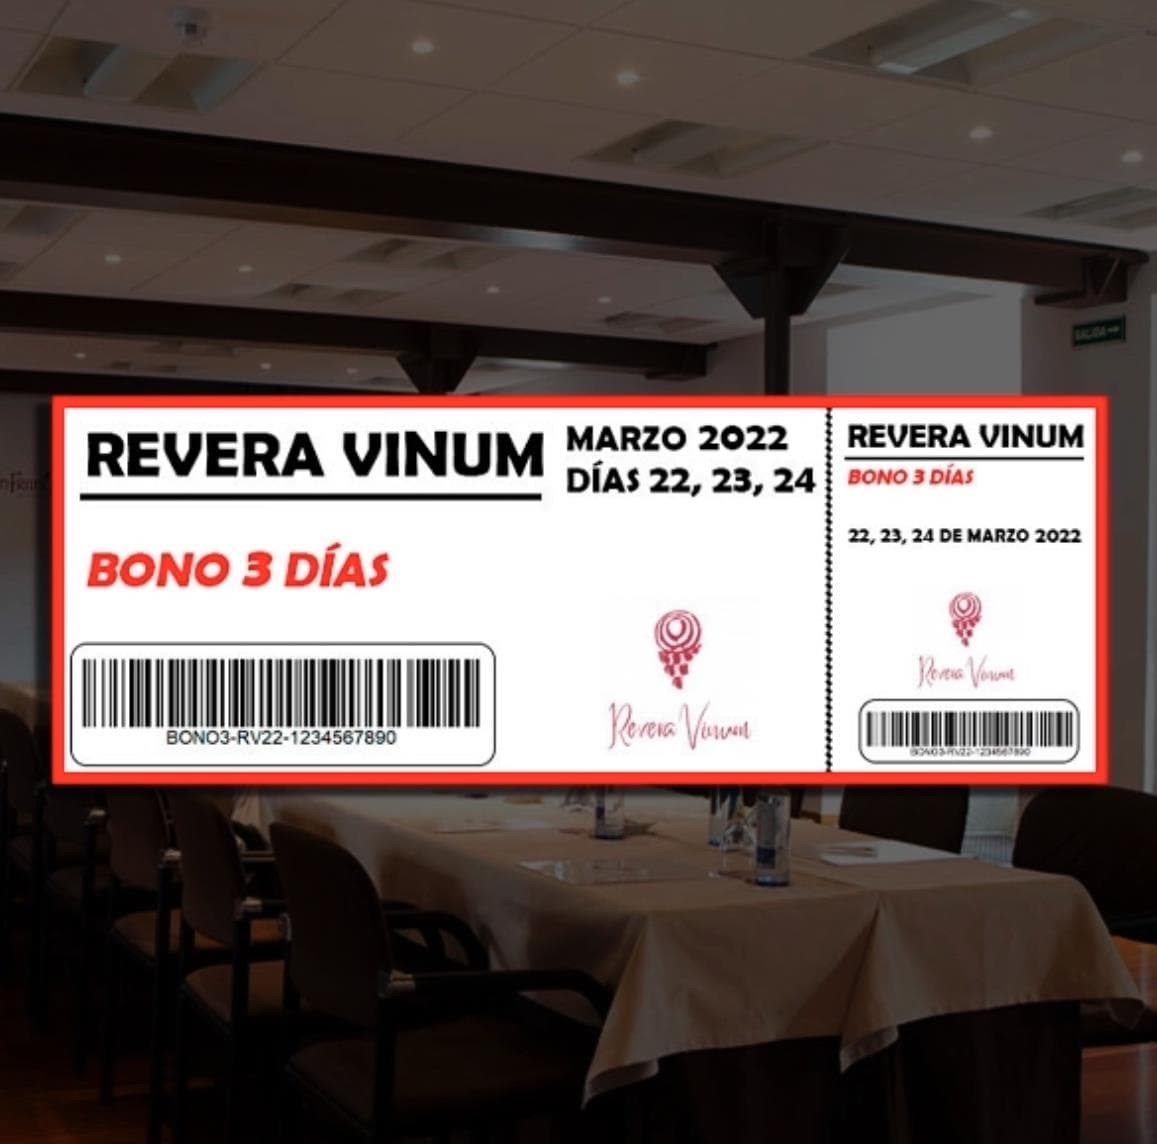 VENDA DE ENTRADAS | REVERA VINUM 2022 - Imagen 4